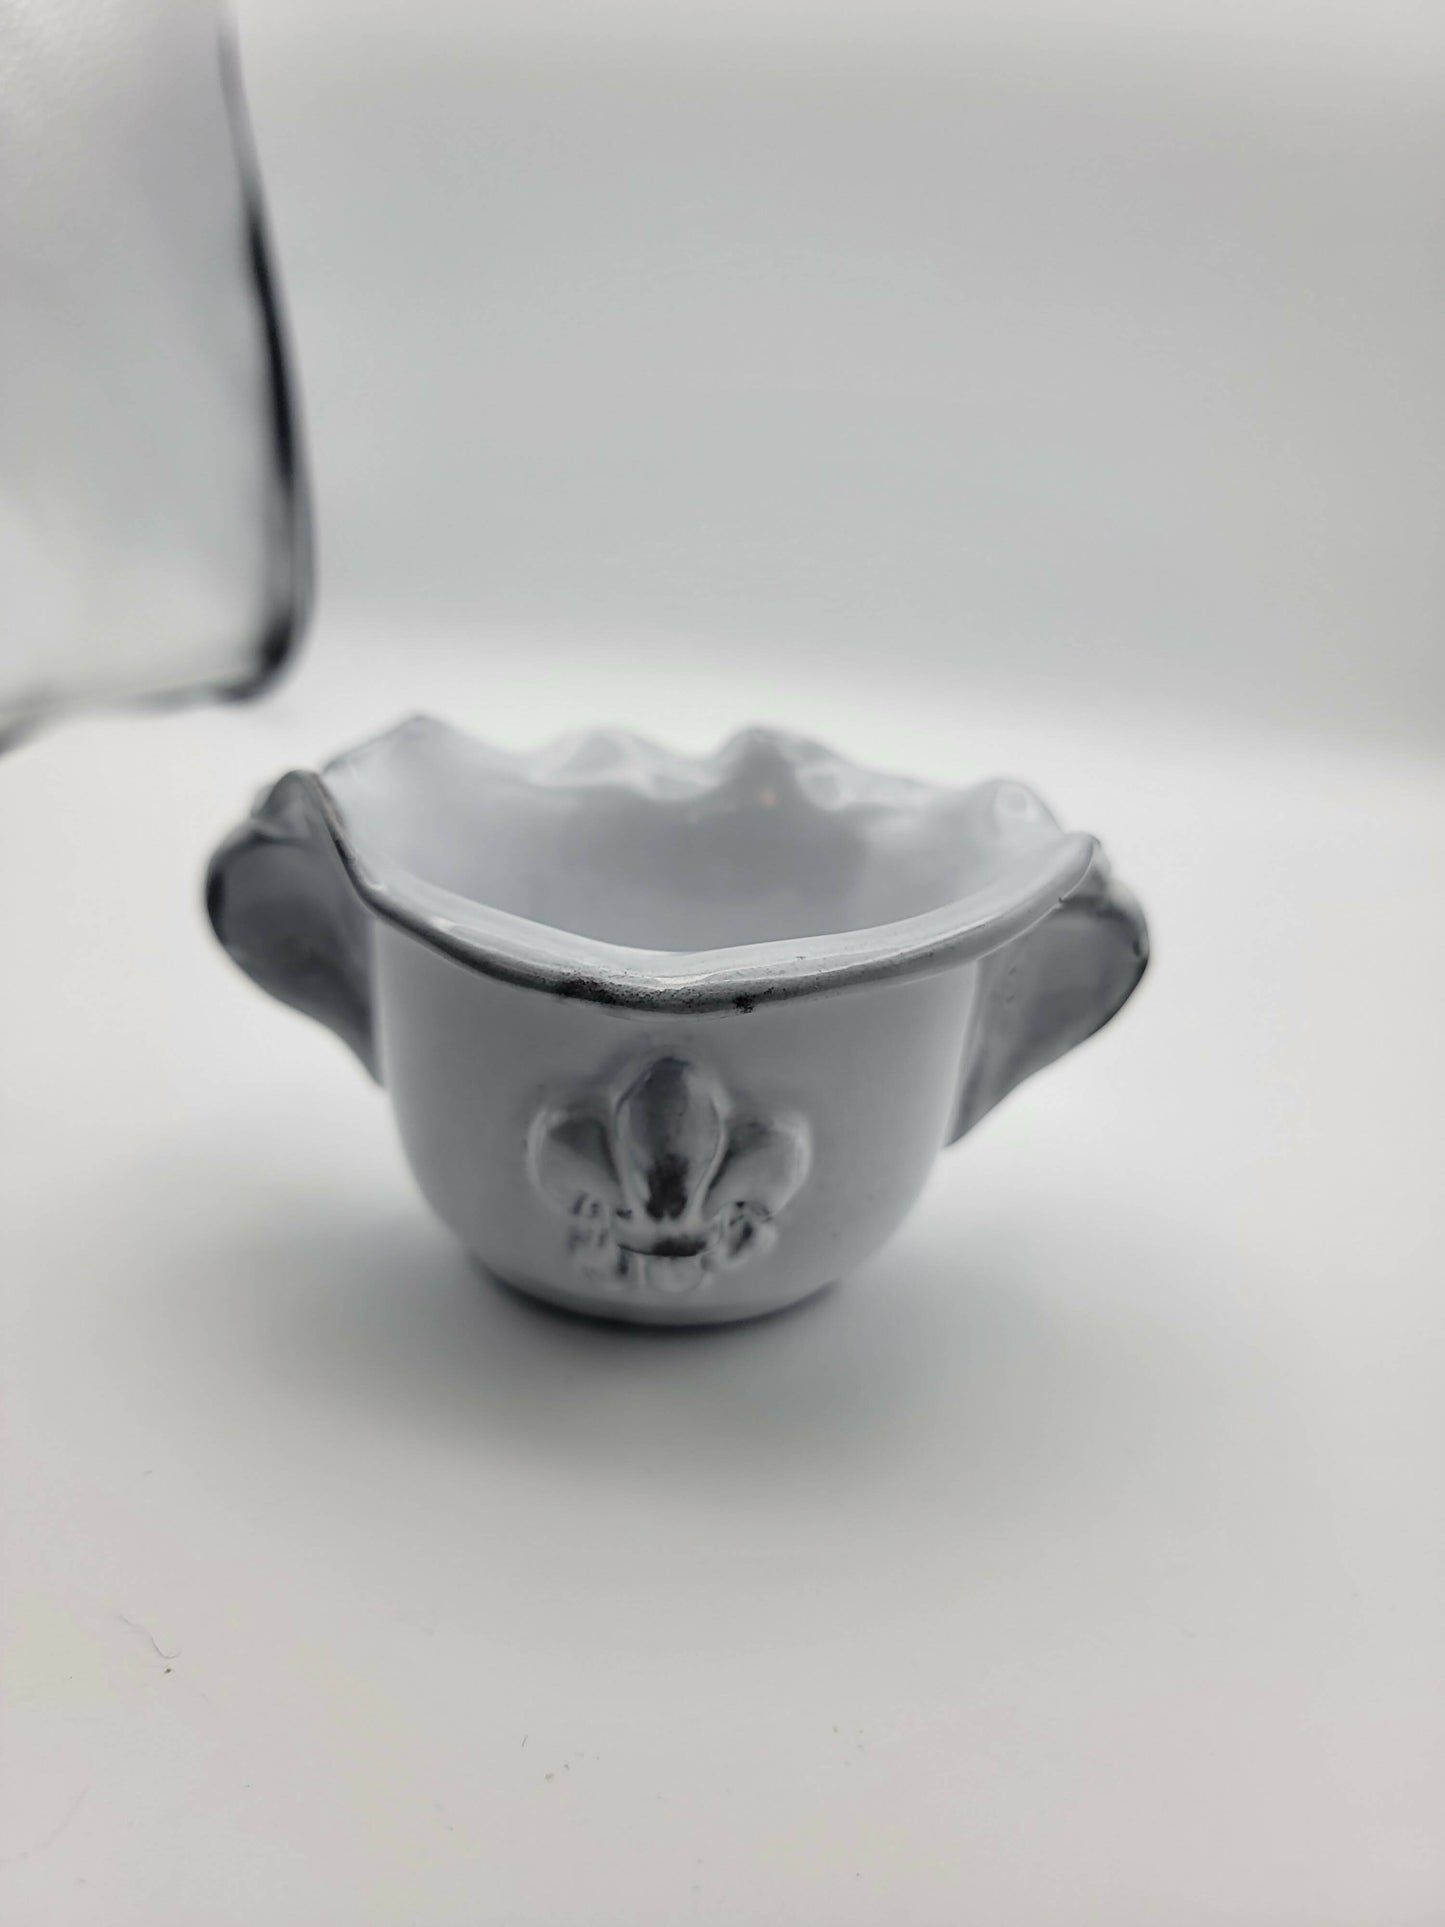 Abigails Italy fleur de lis pottery bowl